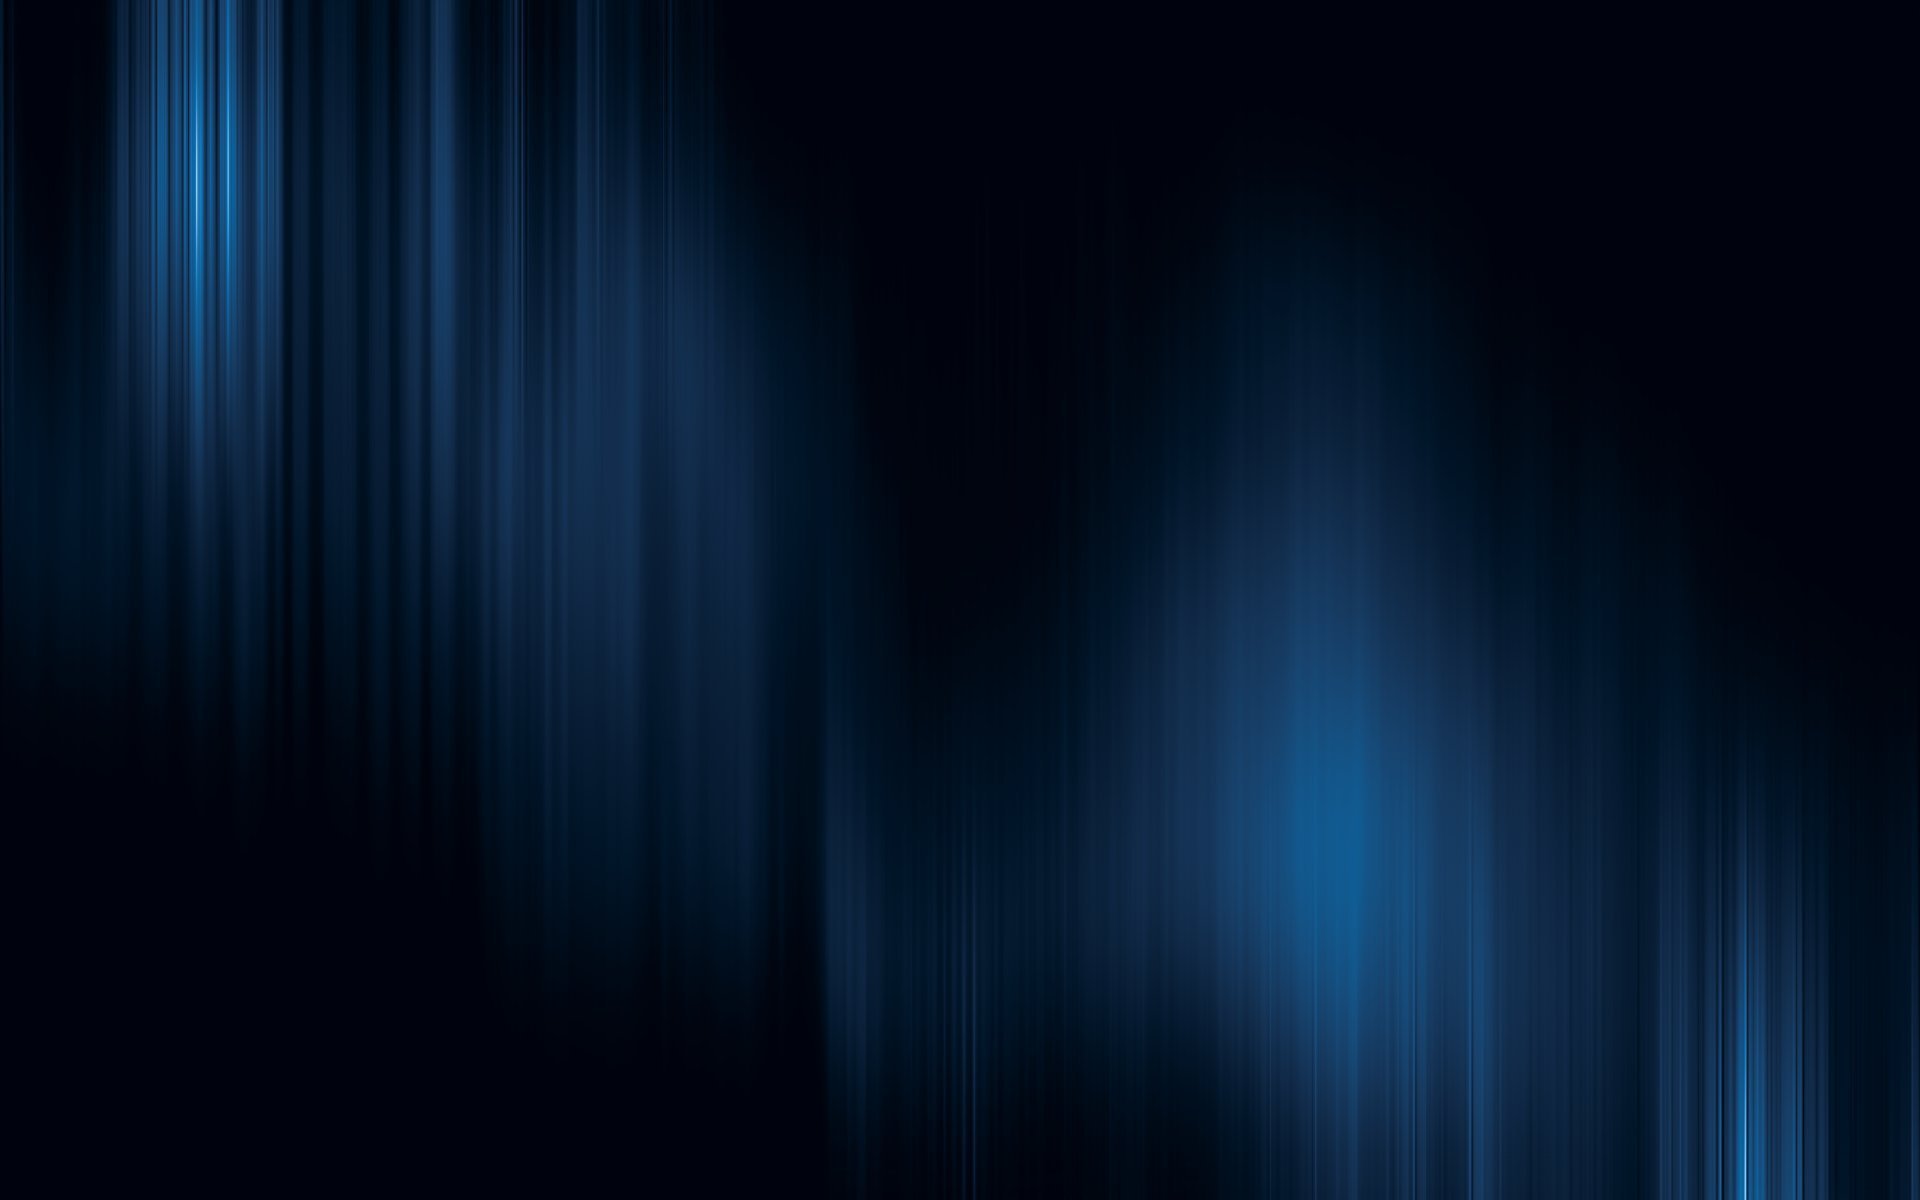 Dark Blue Background free download | PixelsTalk.Net